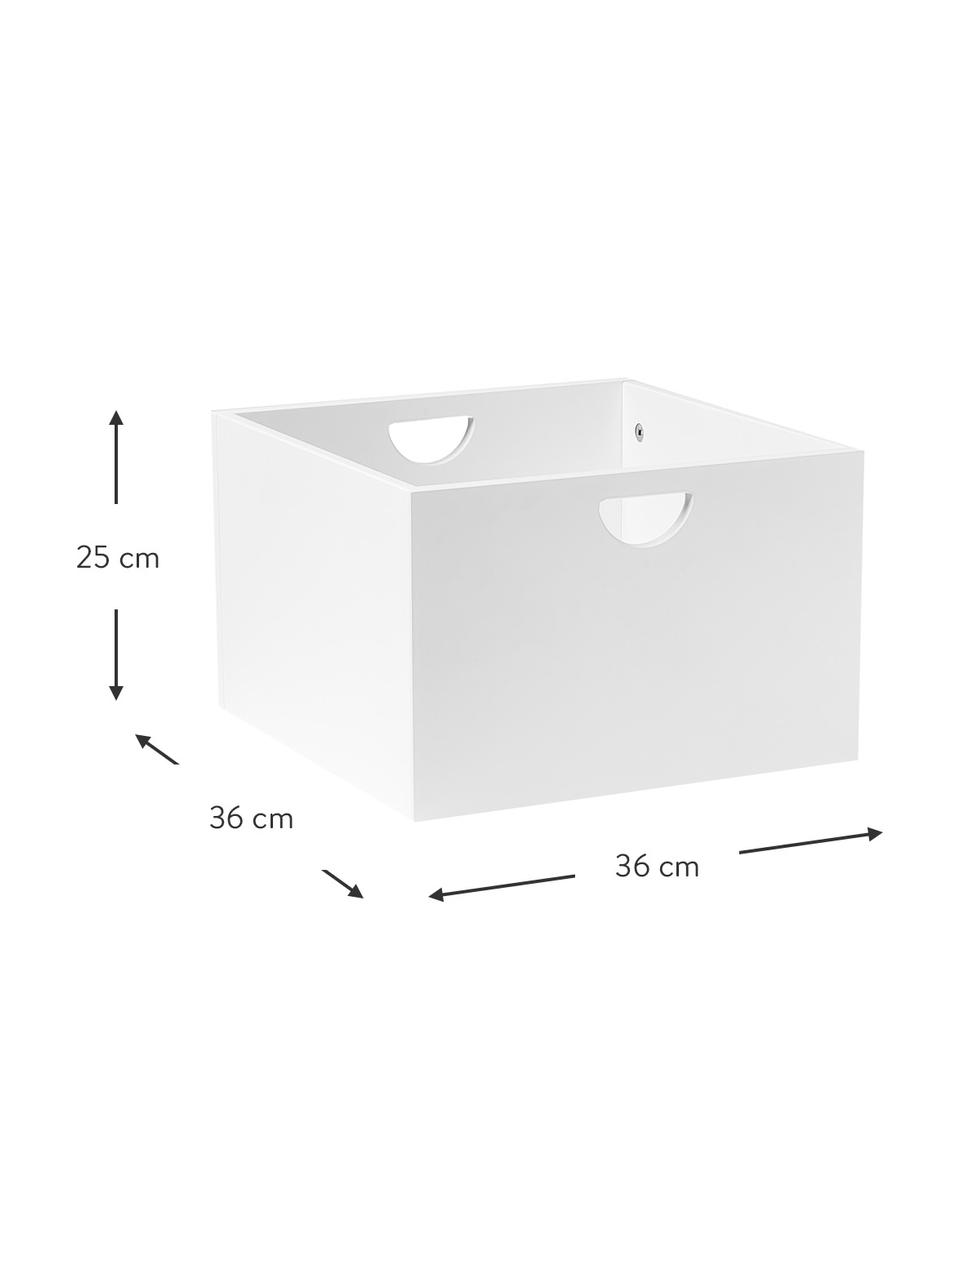 Zásuvky Nunila, 2 ks, Lakovaná MDF deska (dřevovláknitá deska střední hustoty), Bílá, Š 36 cm, V 25 cm